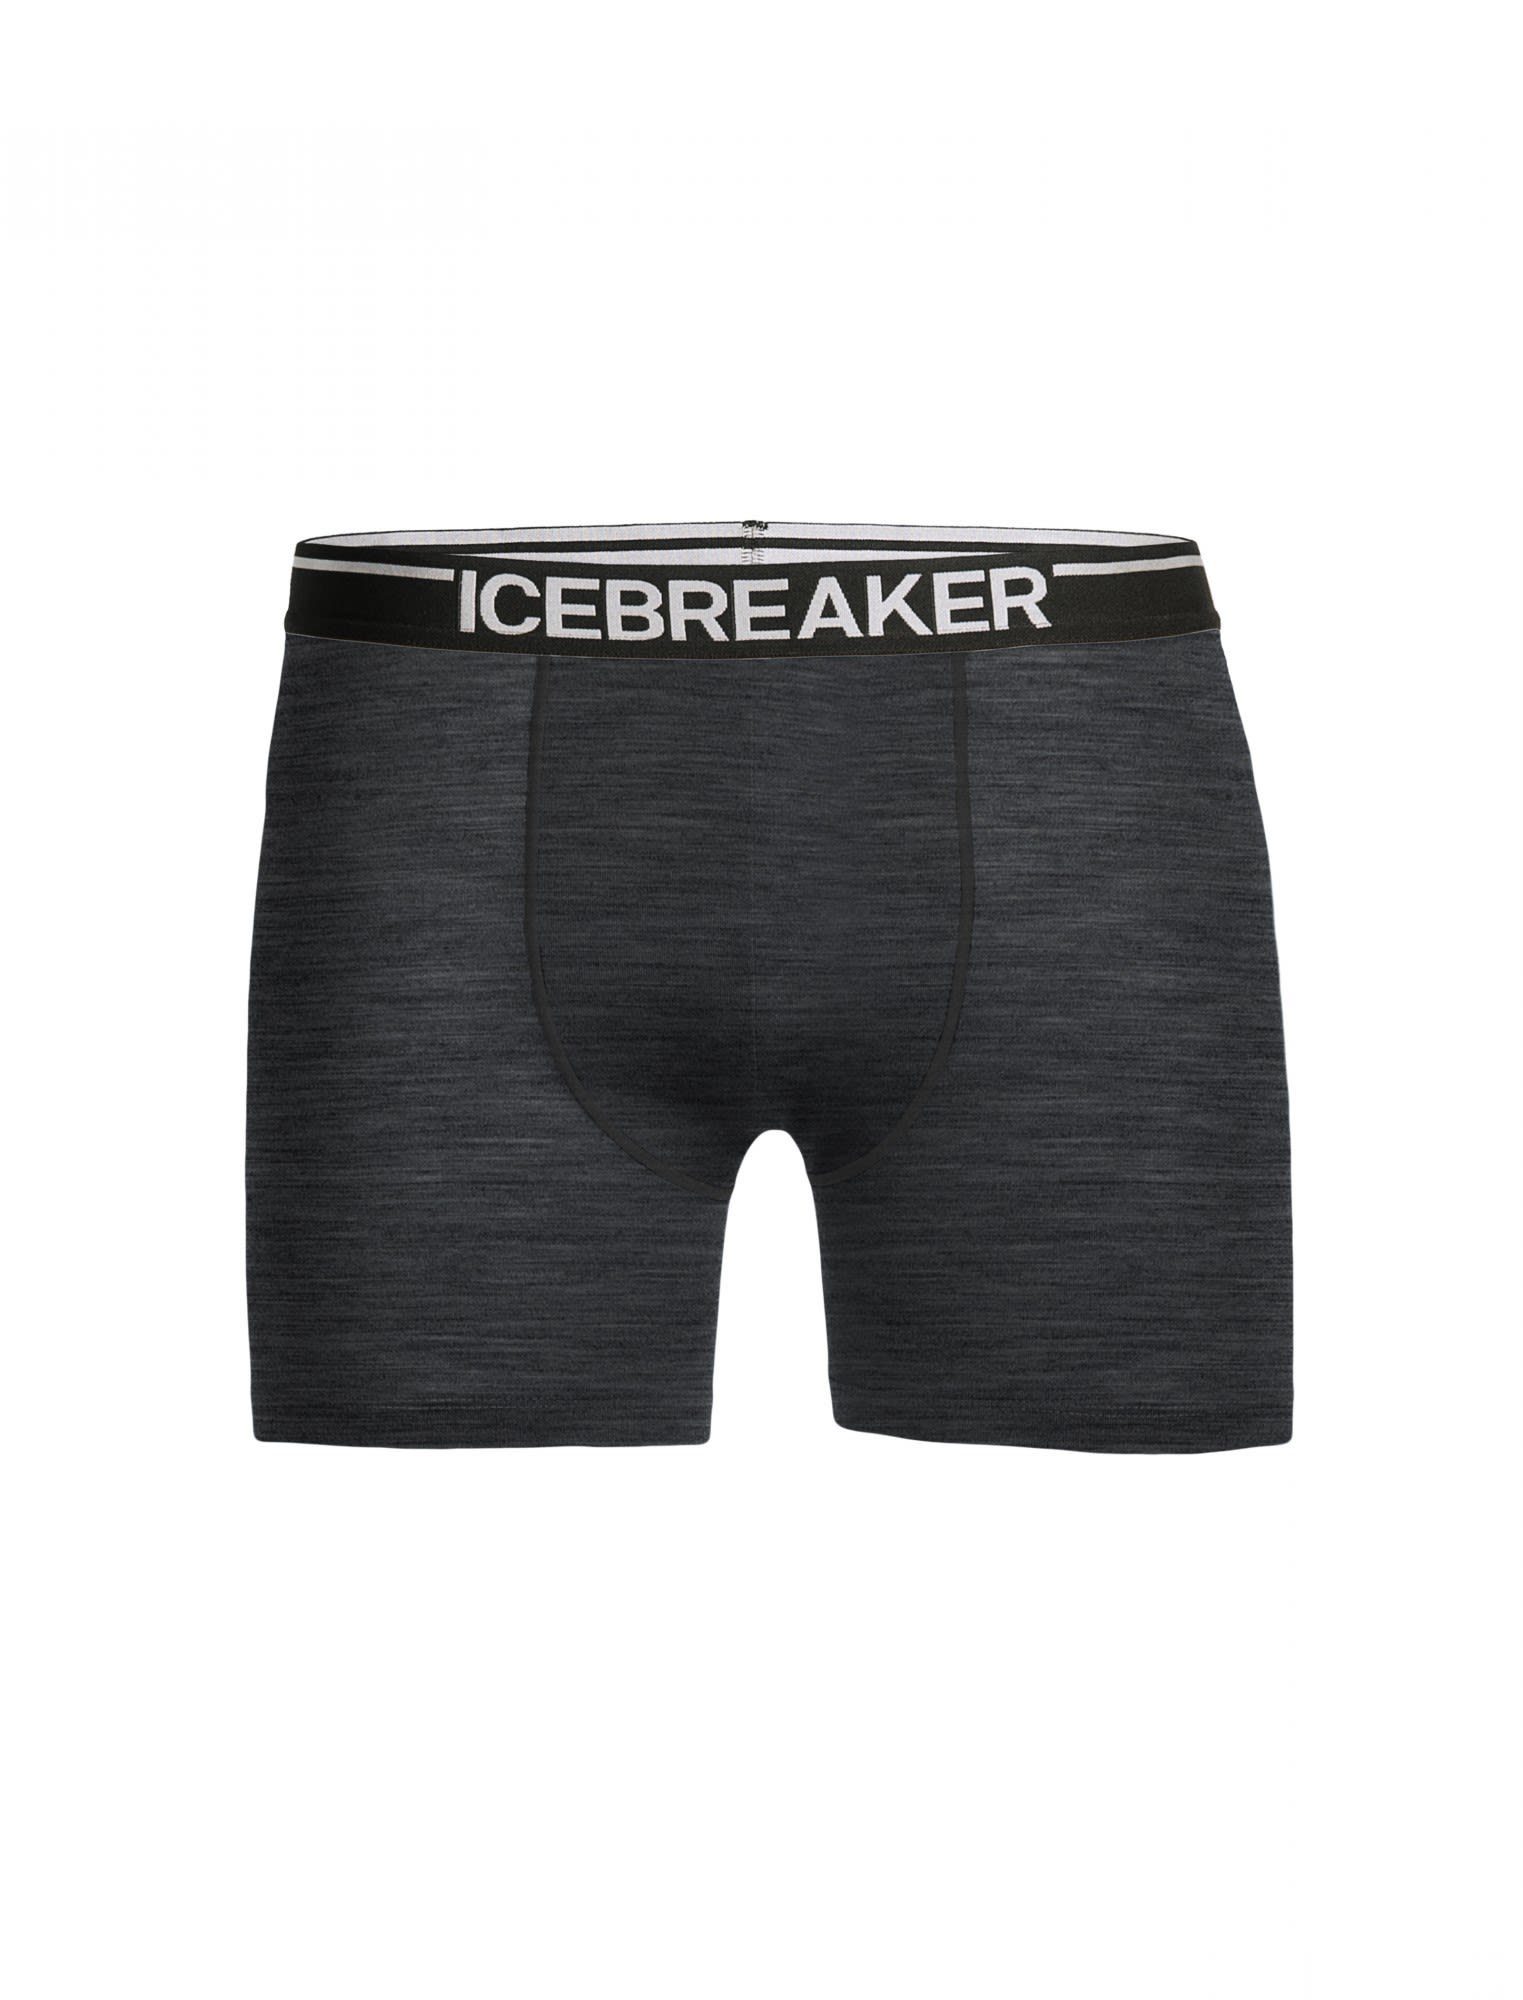 Boxers Unterhose Herren Icebreaker Icebreaker HTHR Lange M Grey Anatomica Lange